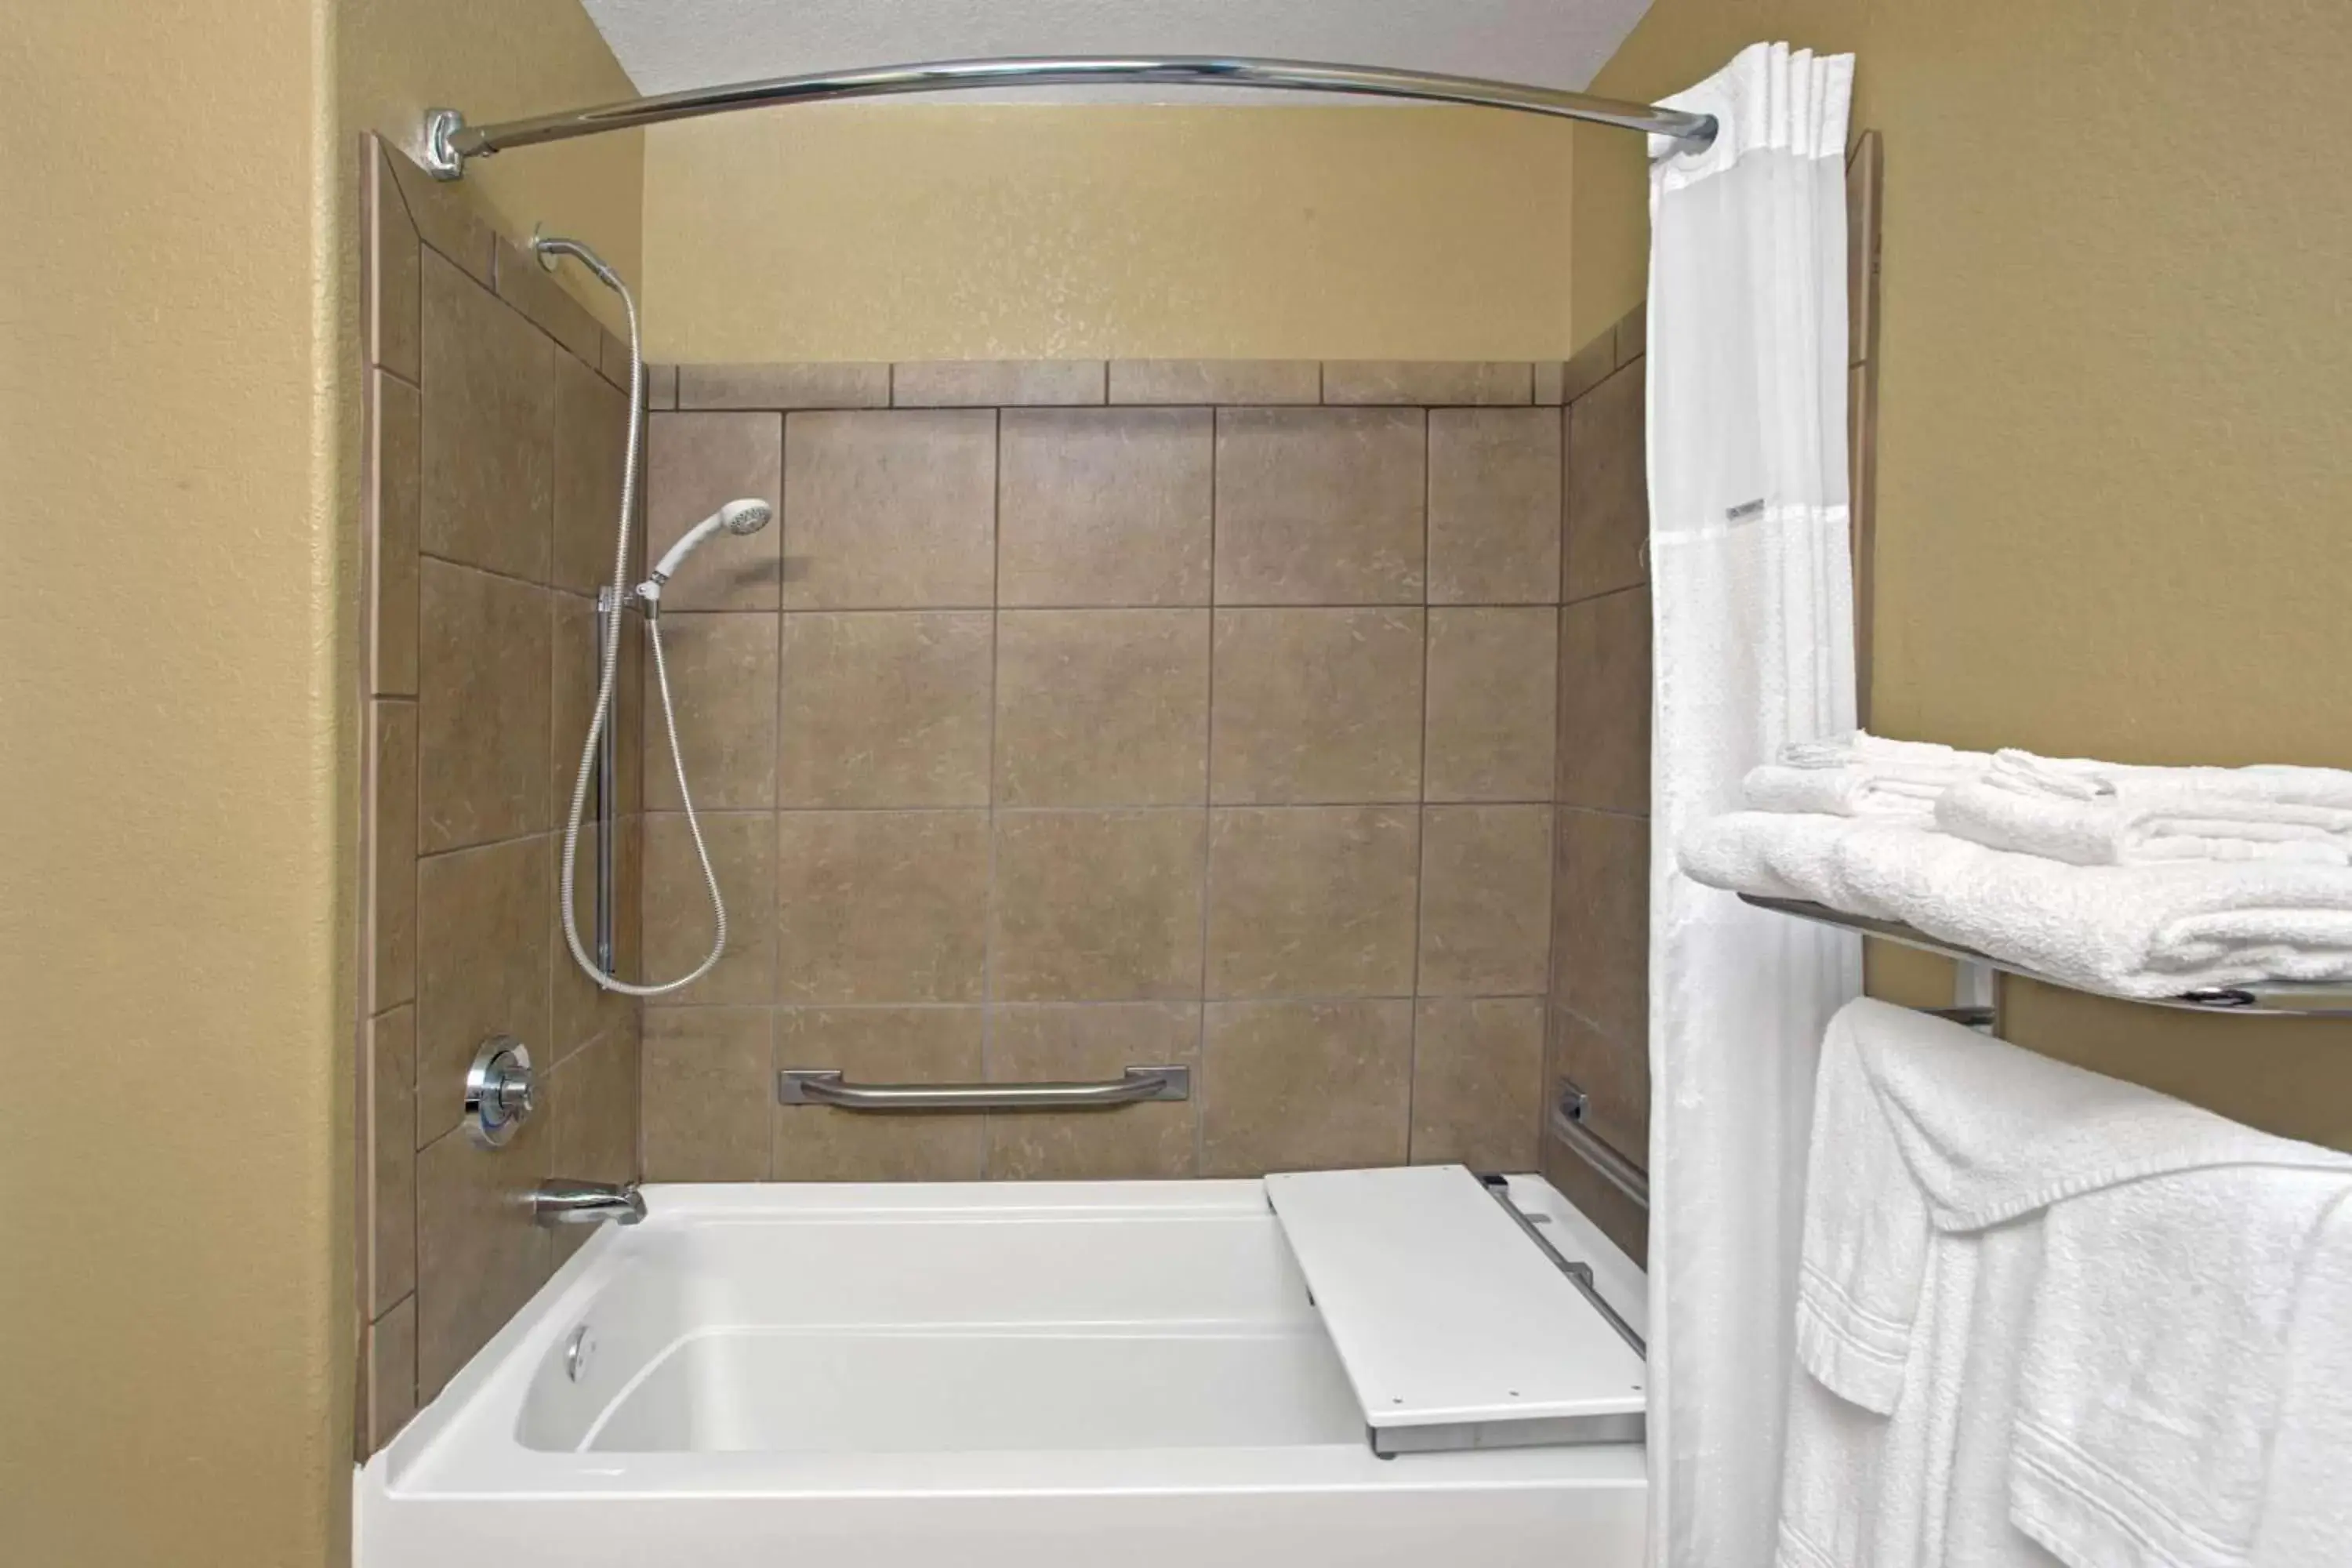 Bathroom in Microtel Inn & Suites - Cartersville